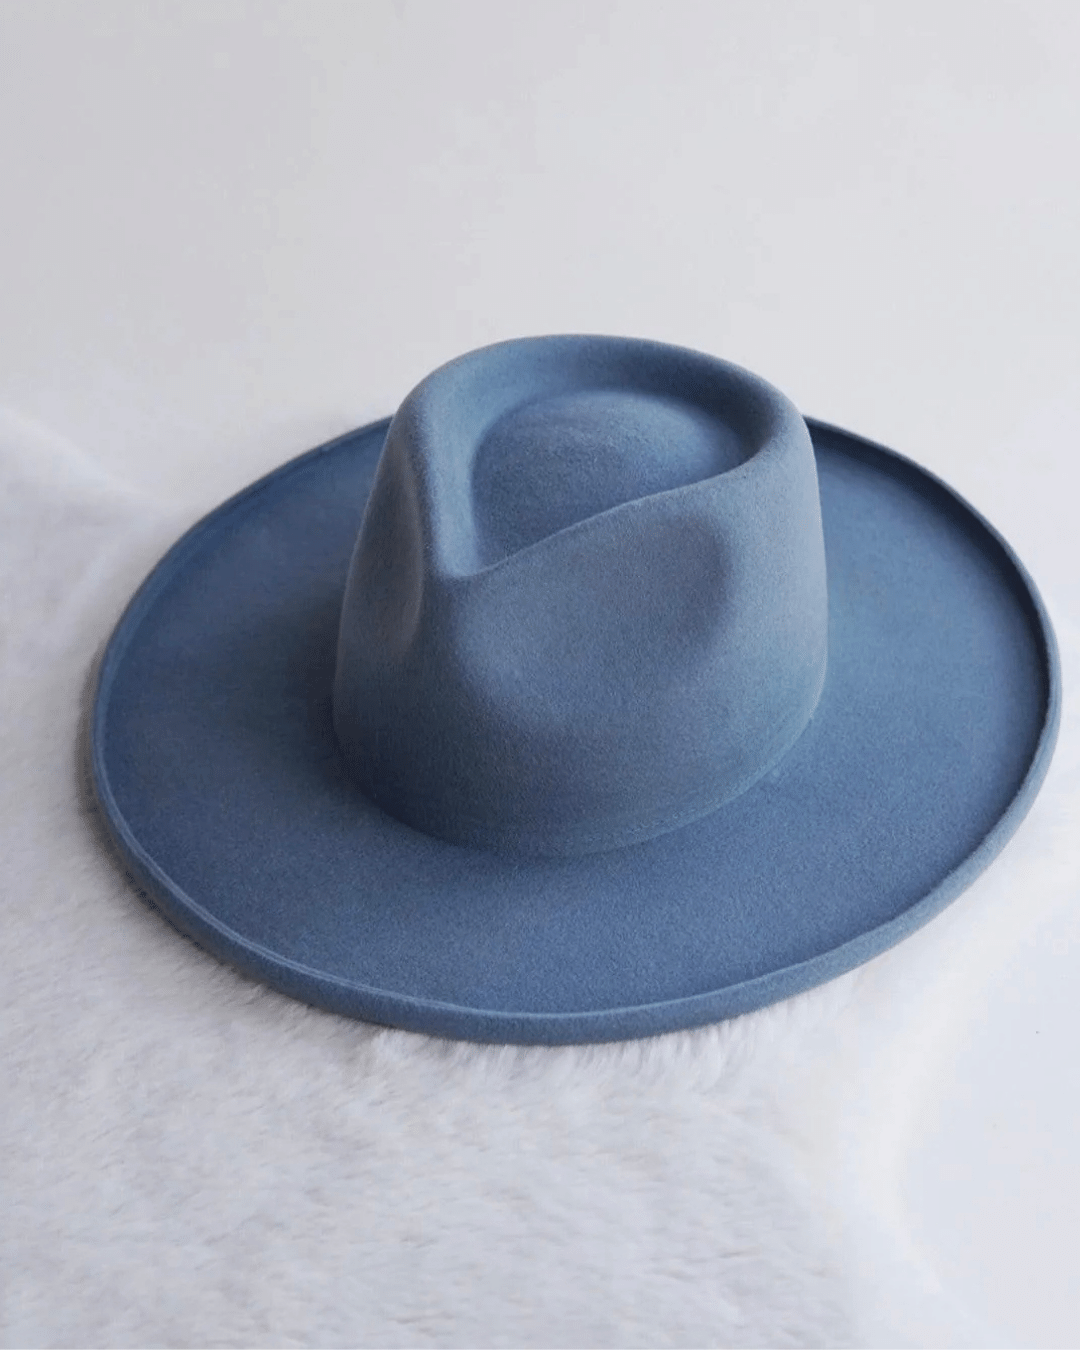 The Laguna. Augustine Hat Co. wide brim hat. Stiff Australian wool hat in blue